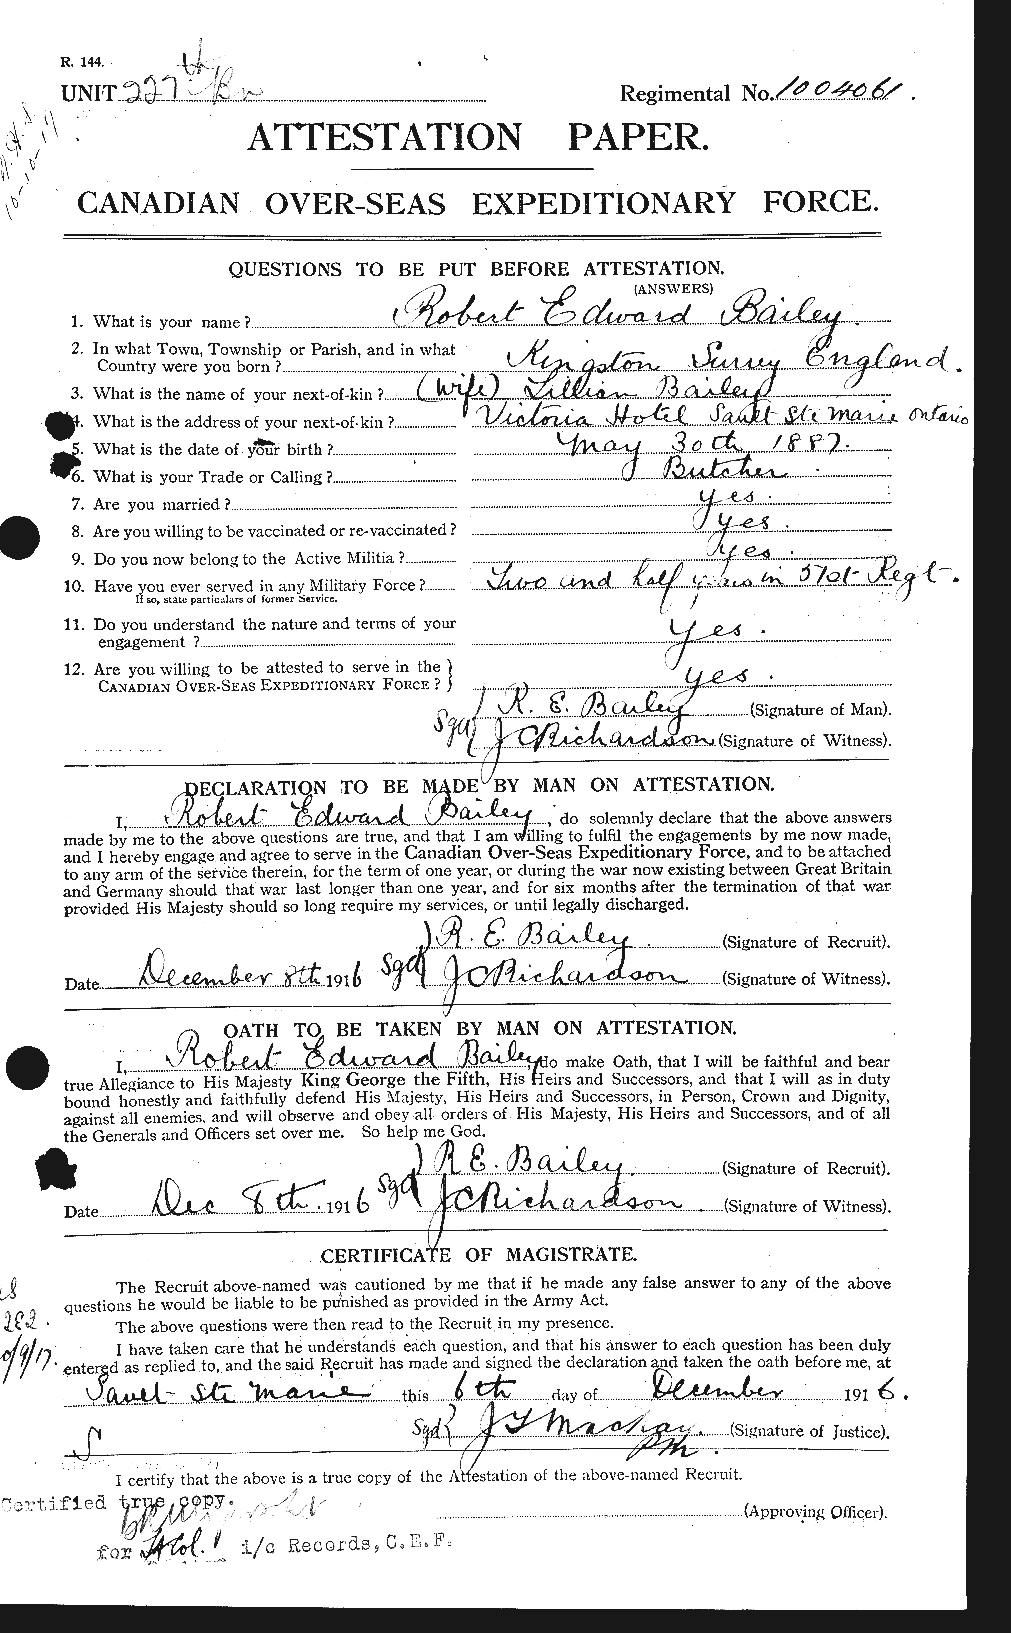 Dossiers du Personnel de la Première Guerre mondiale - CEC 218738a